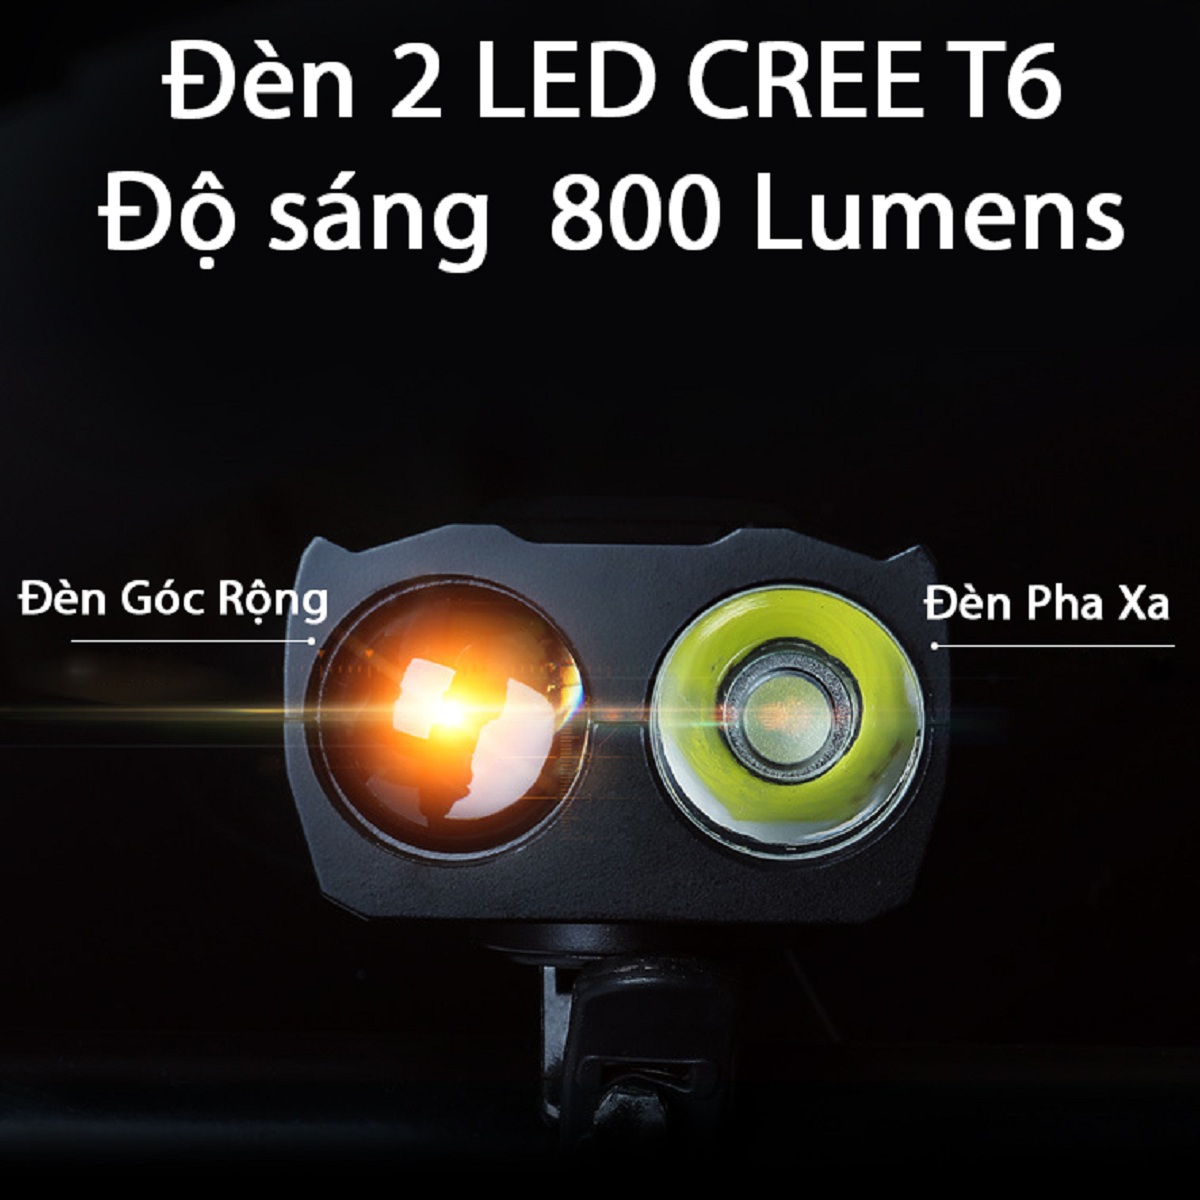 Đèn Pha Xe Đạp Kết Hợp Còi CRON-X JEANS | Đèn 2 LED Cree T6 Siêu Sáng 800 Lumens, Thiết Kế Chống Nước | Còi Kêu Vang 140 dB | Pin Sạc USB Tiện Lợi Dung Lượng 4000 mah | Chế Độ Đèn Tự Điều Chỉnh Ảnh Sáng Thông Minh | Thời Gian Sáng Tối Đa 20 Giờ